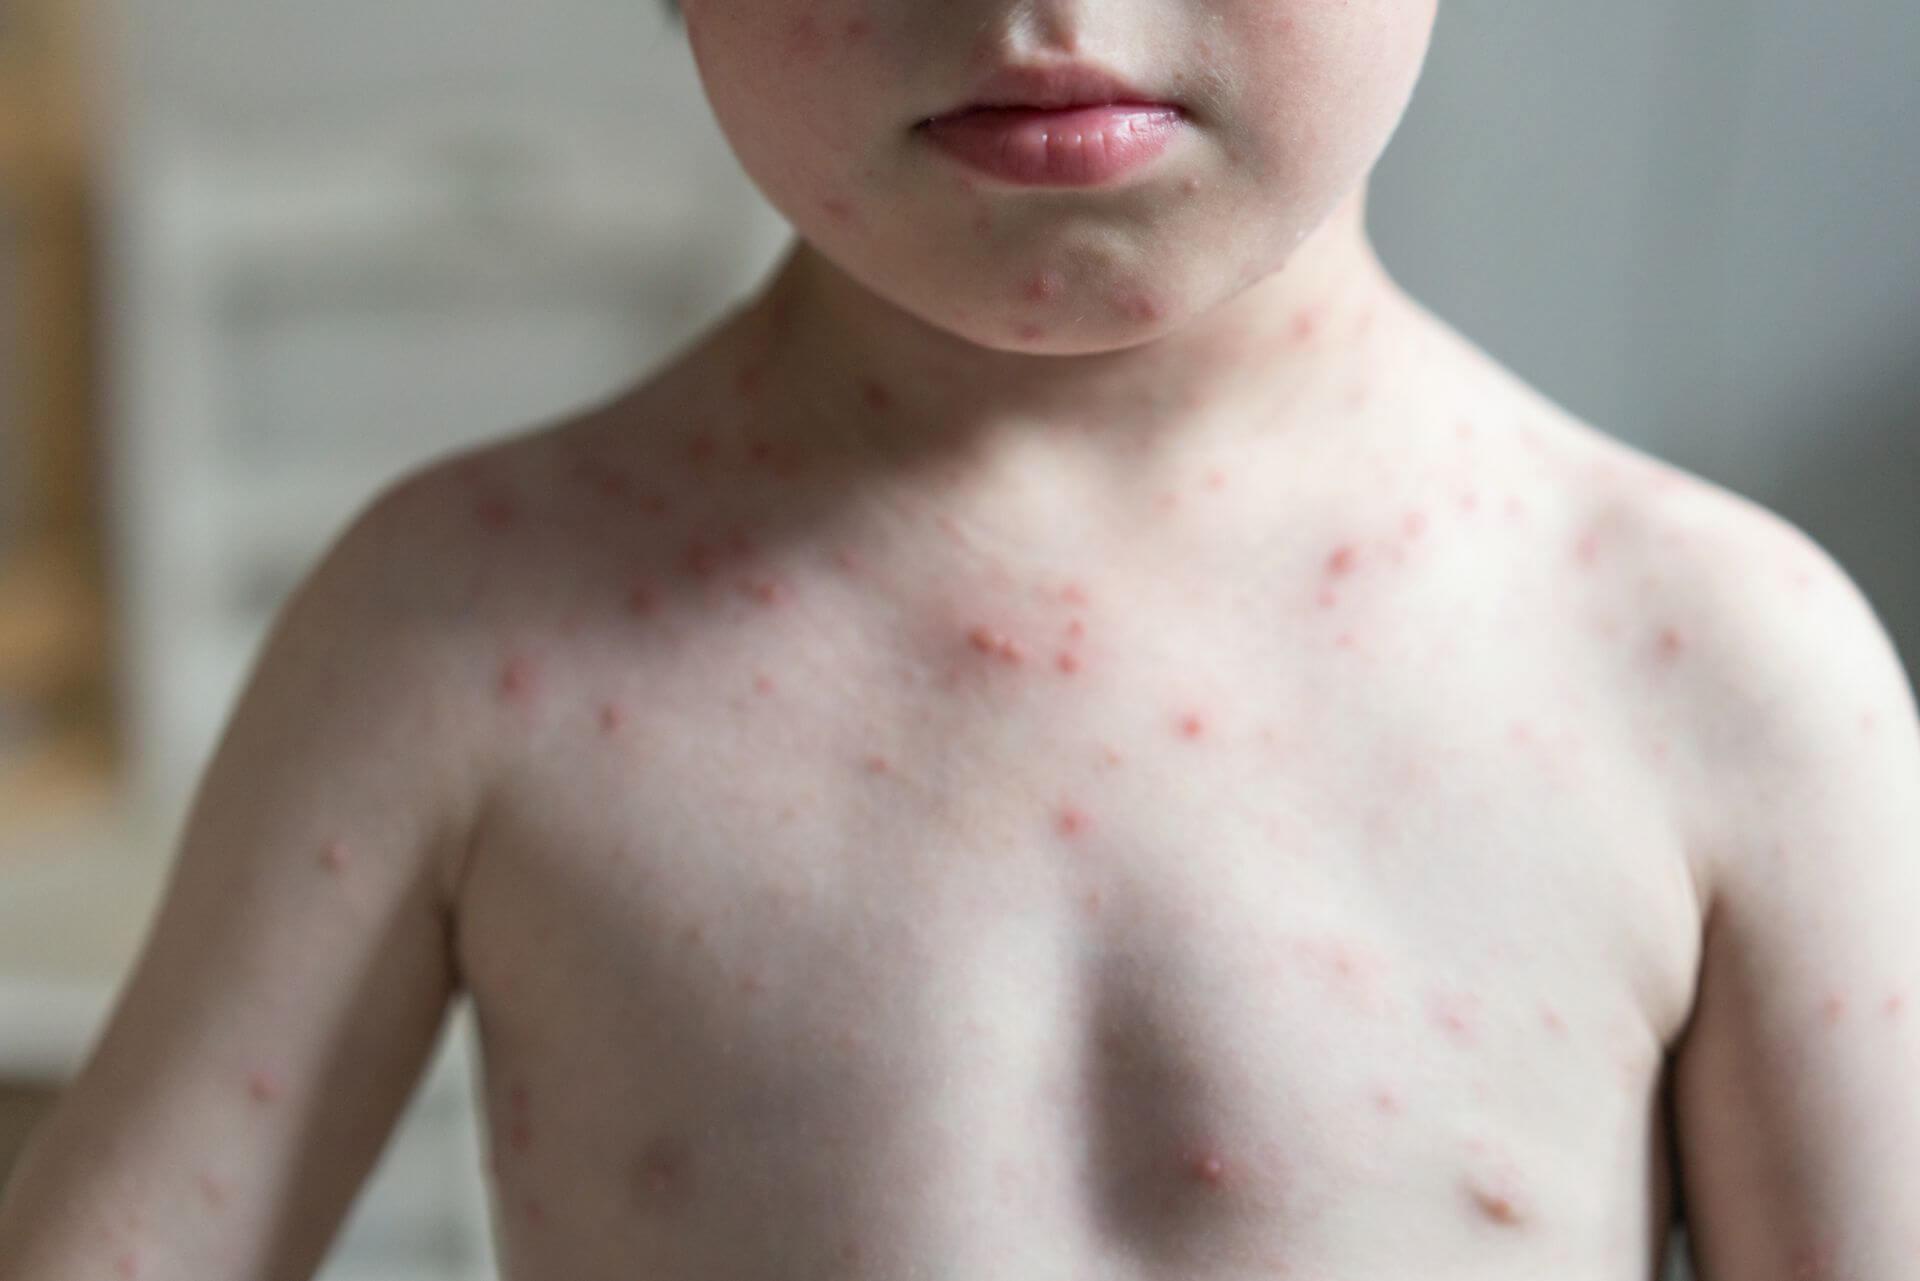 Hautausschläge bei Kindern sind zumeist harmlos, können aber auch ernstzunehmende Hintergründe haben.